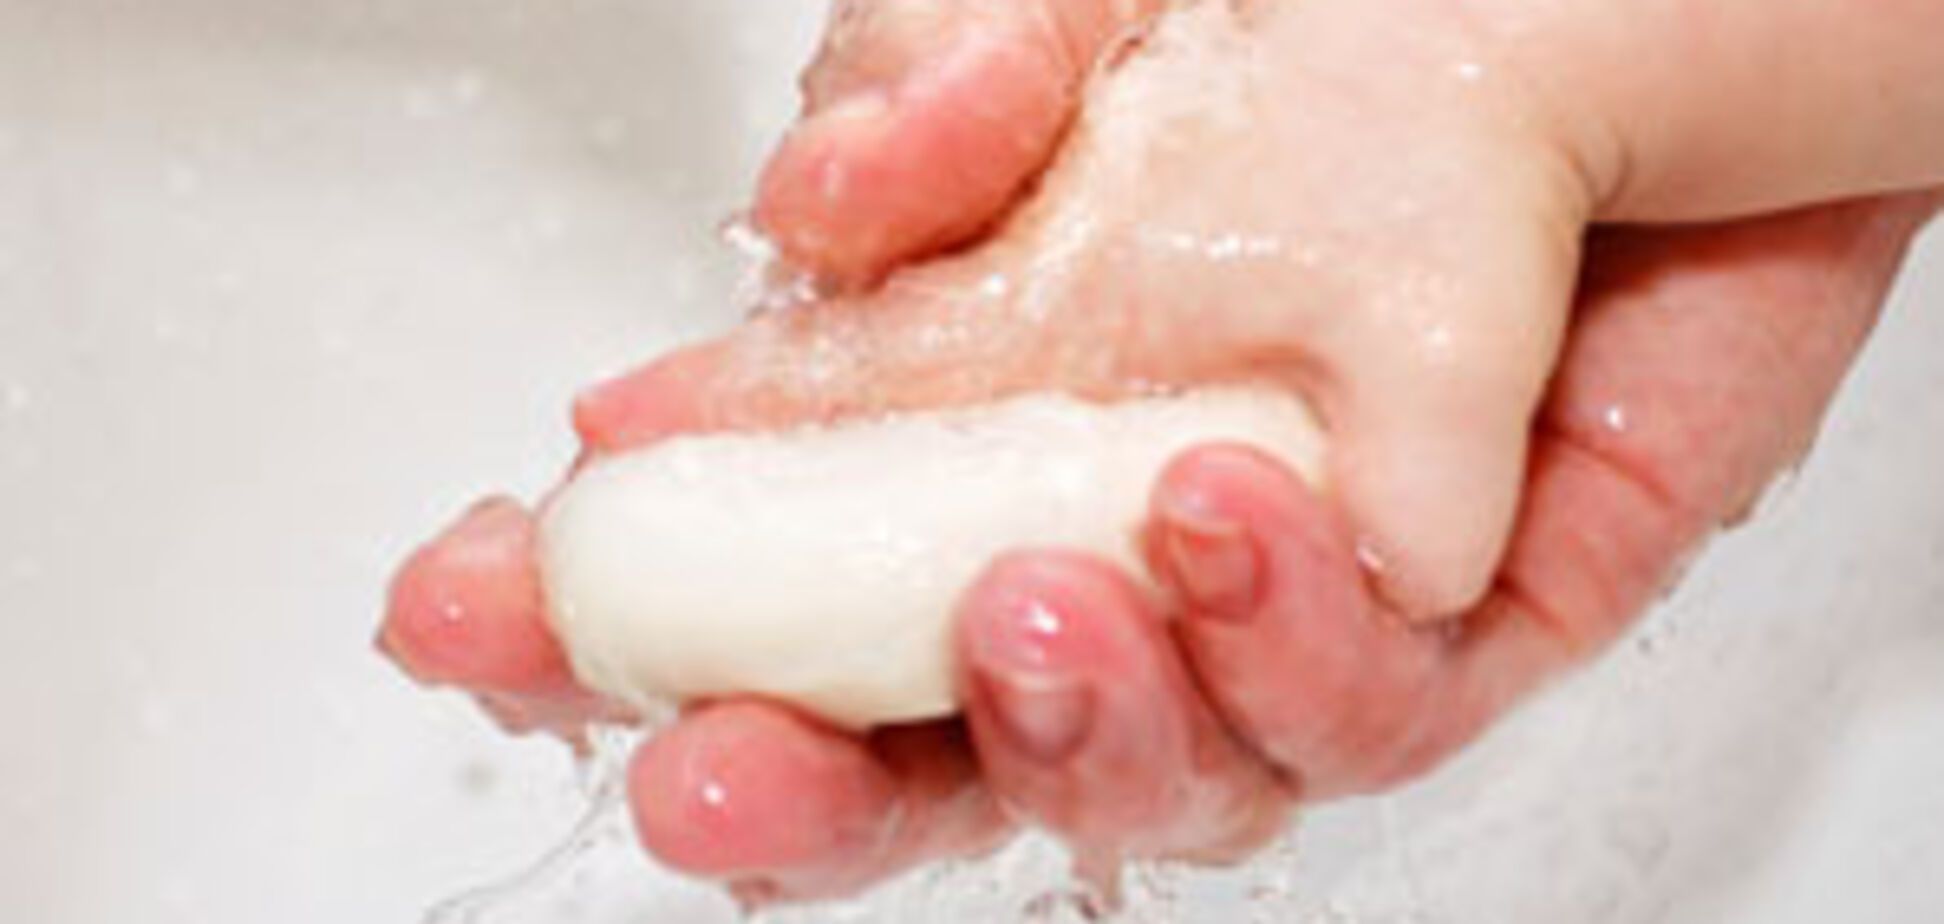 Чистые руки VS коронавирус: эксперт объяснила, почему важна гигиена. Видео